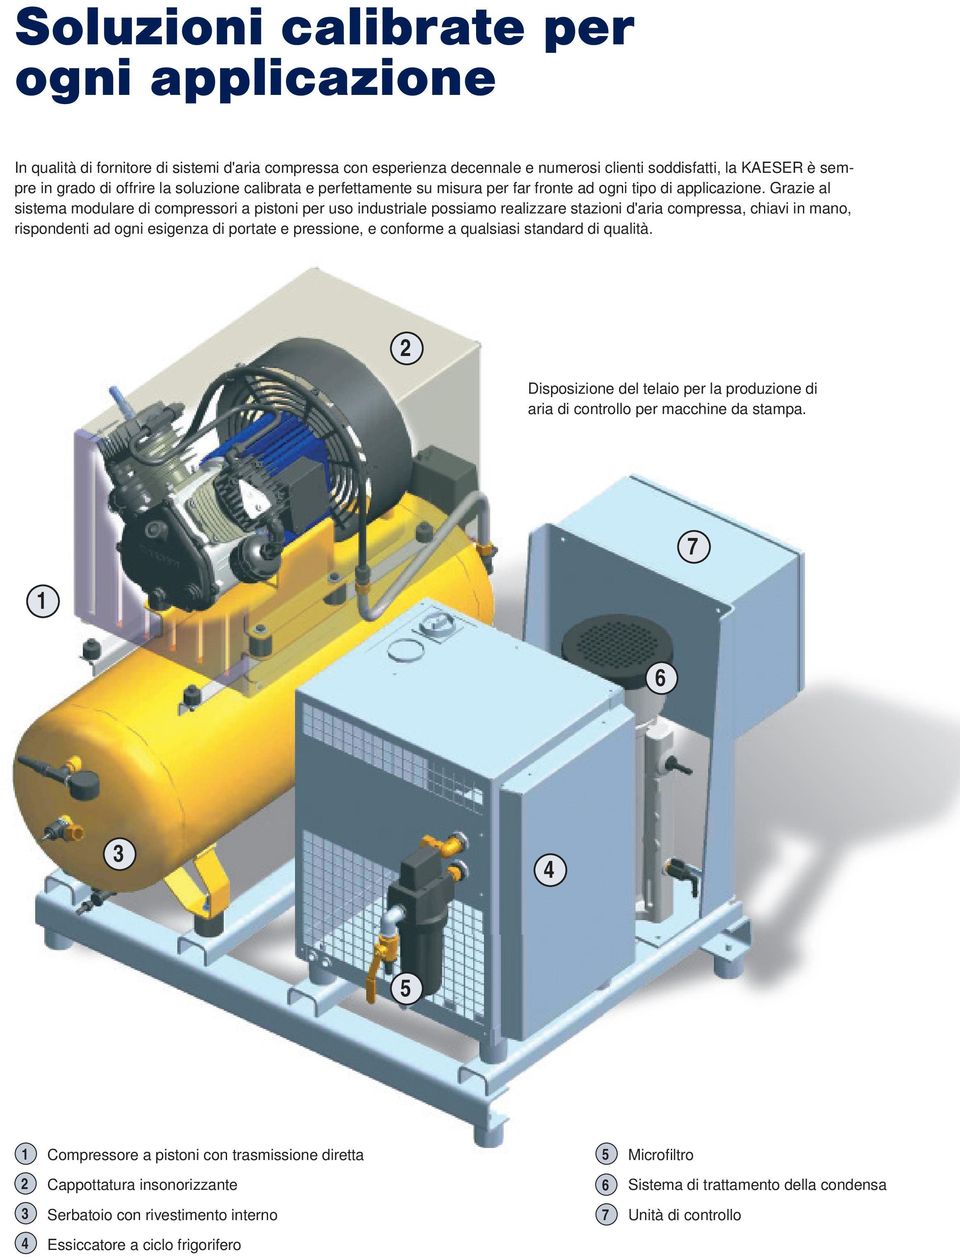 Grazie al sistema modulare di compressori a pistoni per uso industriale possiamo realizzare stazioni d'aria compressa, chiavi in mano, rispondenti ad ogni esigenza di portate e pressione, e conforme